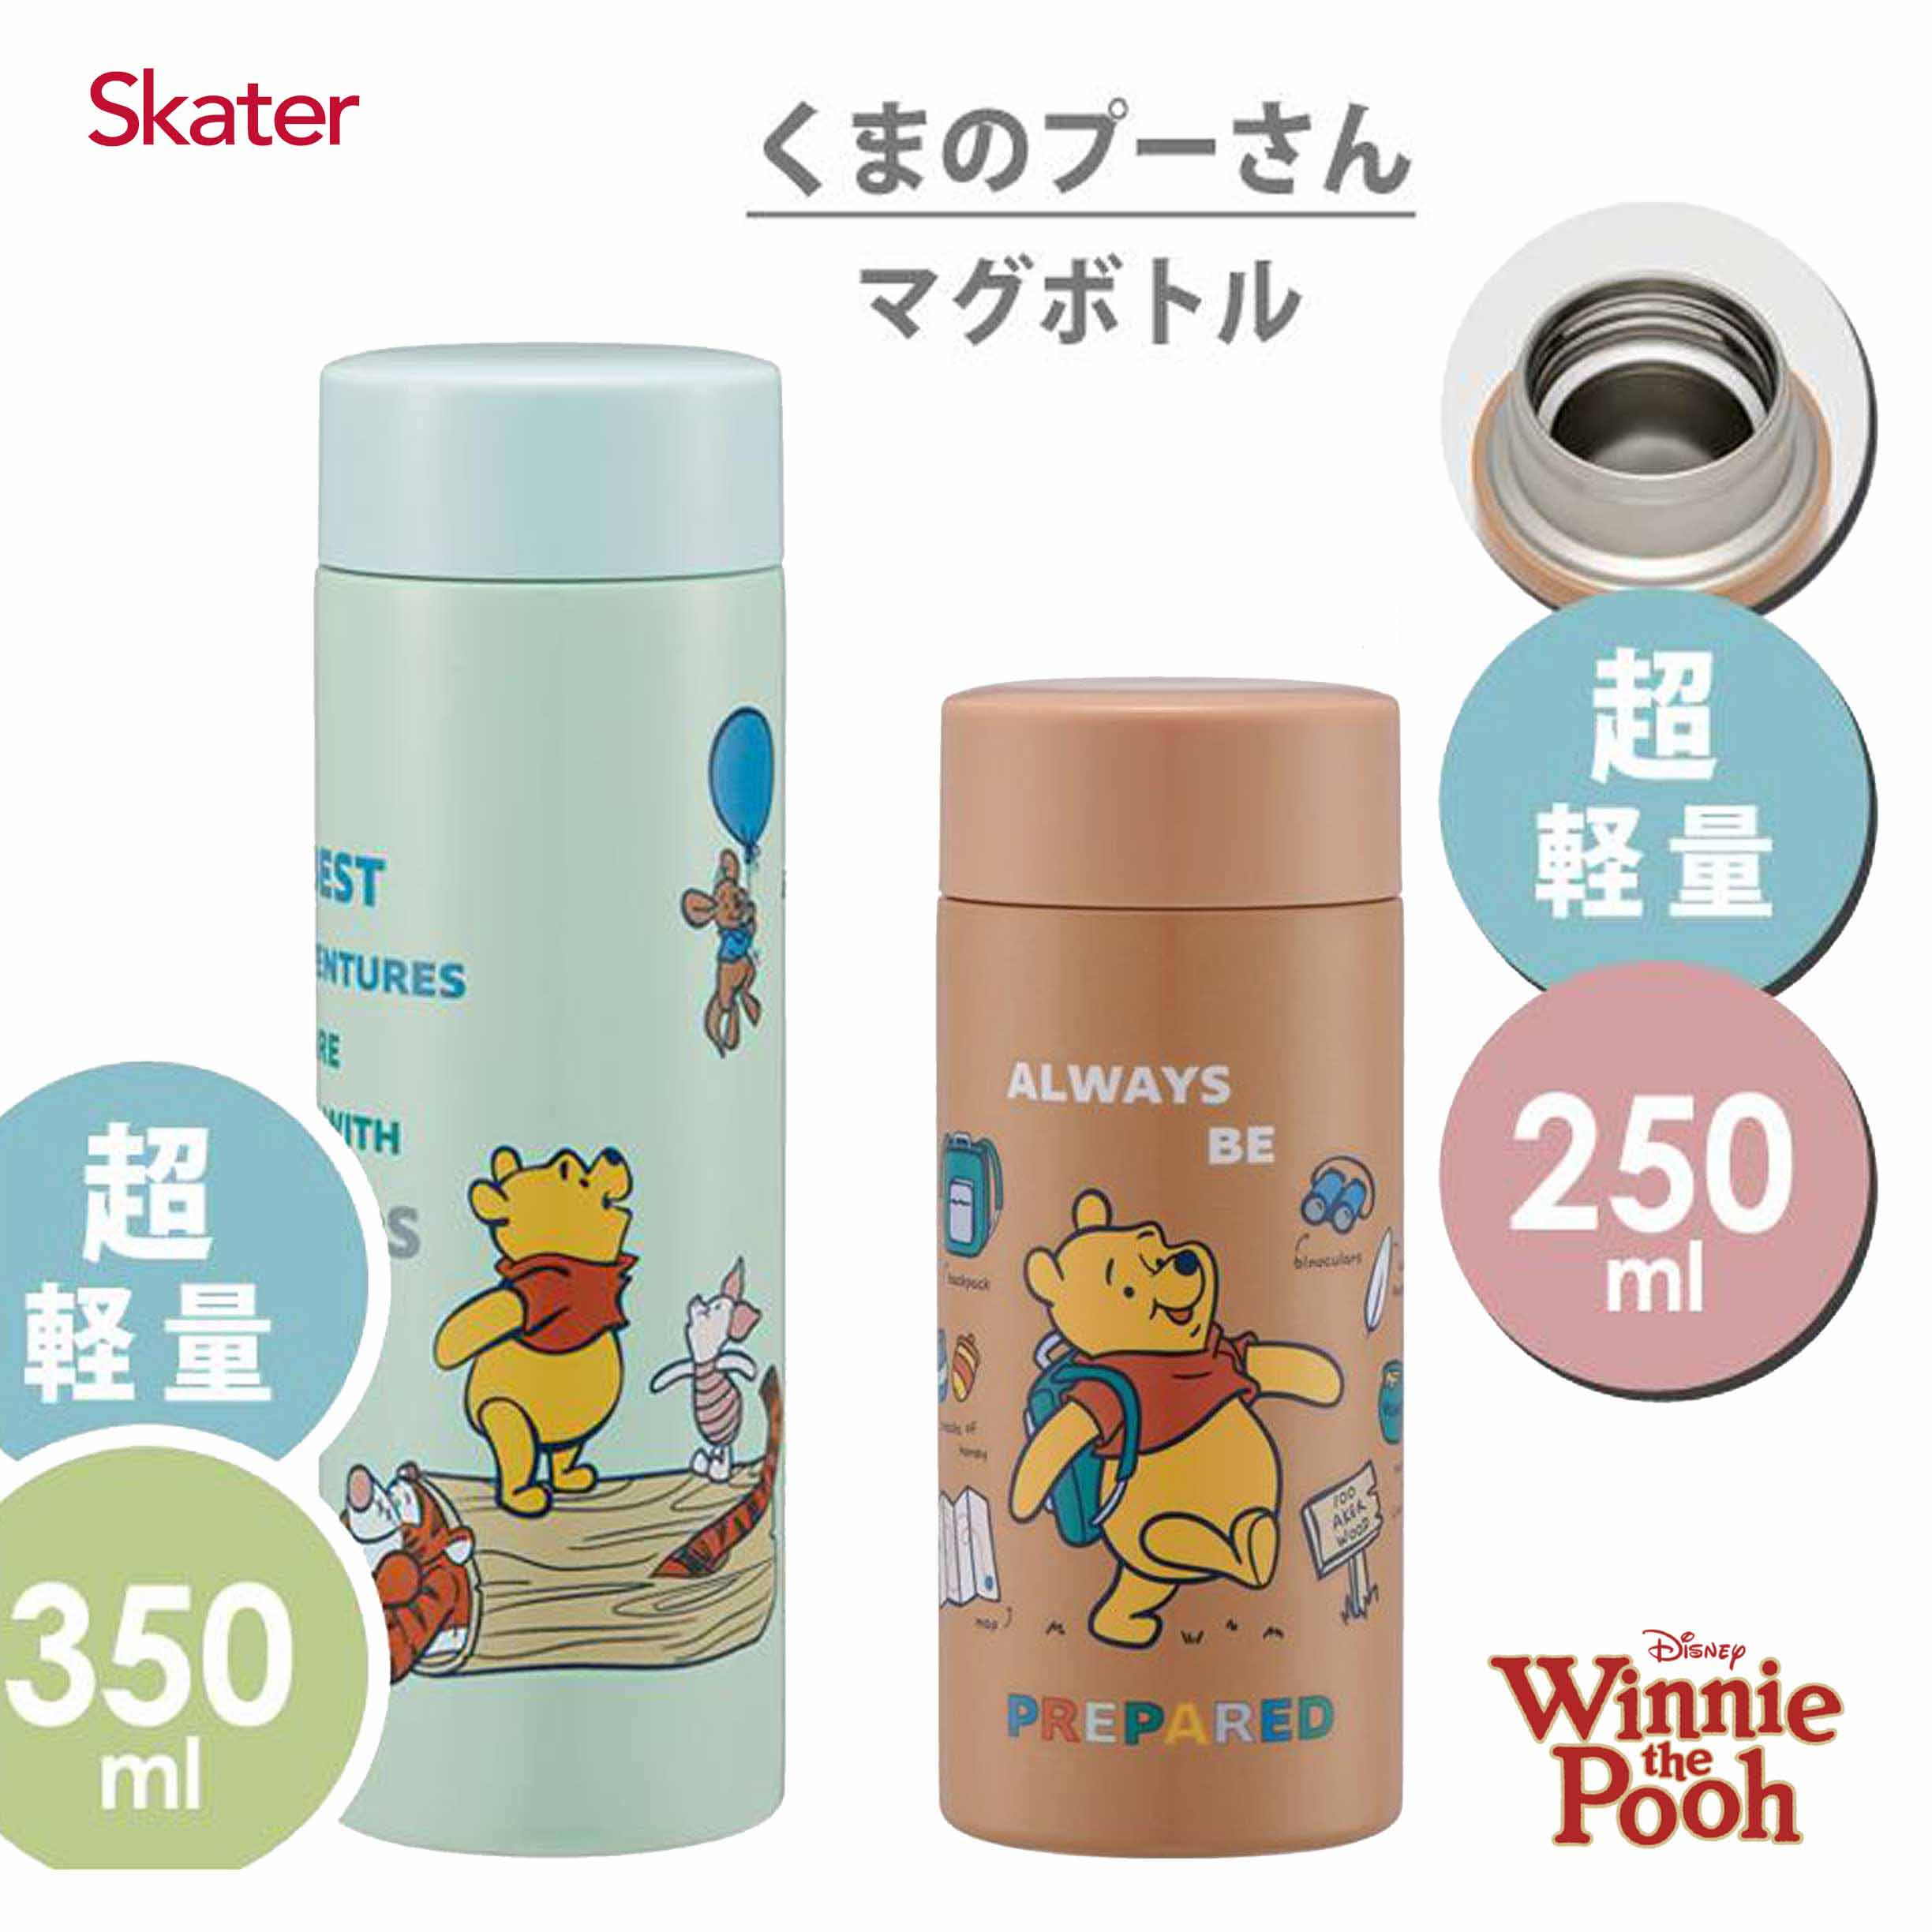 超輕量不鏽鋼保溫瓶 250ml 350ml-小熊維尼 WINNIE THE POOH 迪士尼 DISNEY  Skater 日本進口正版授權